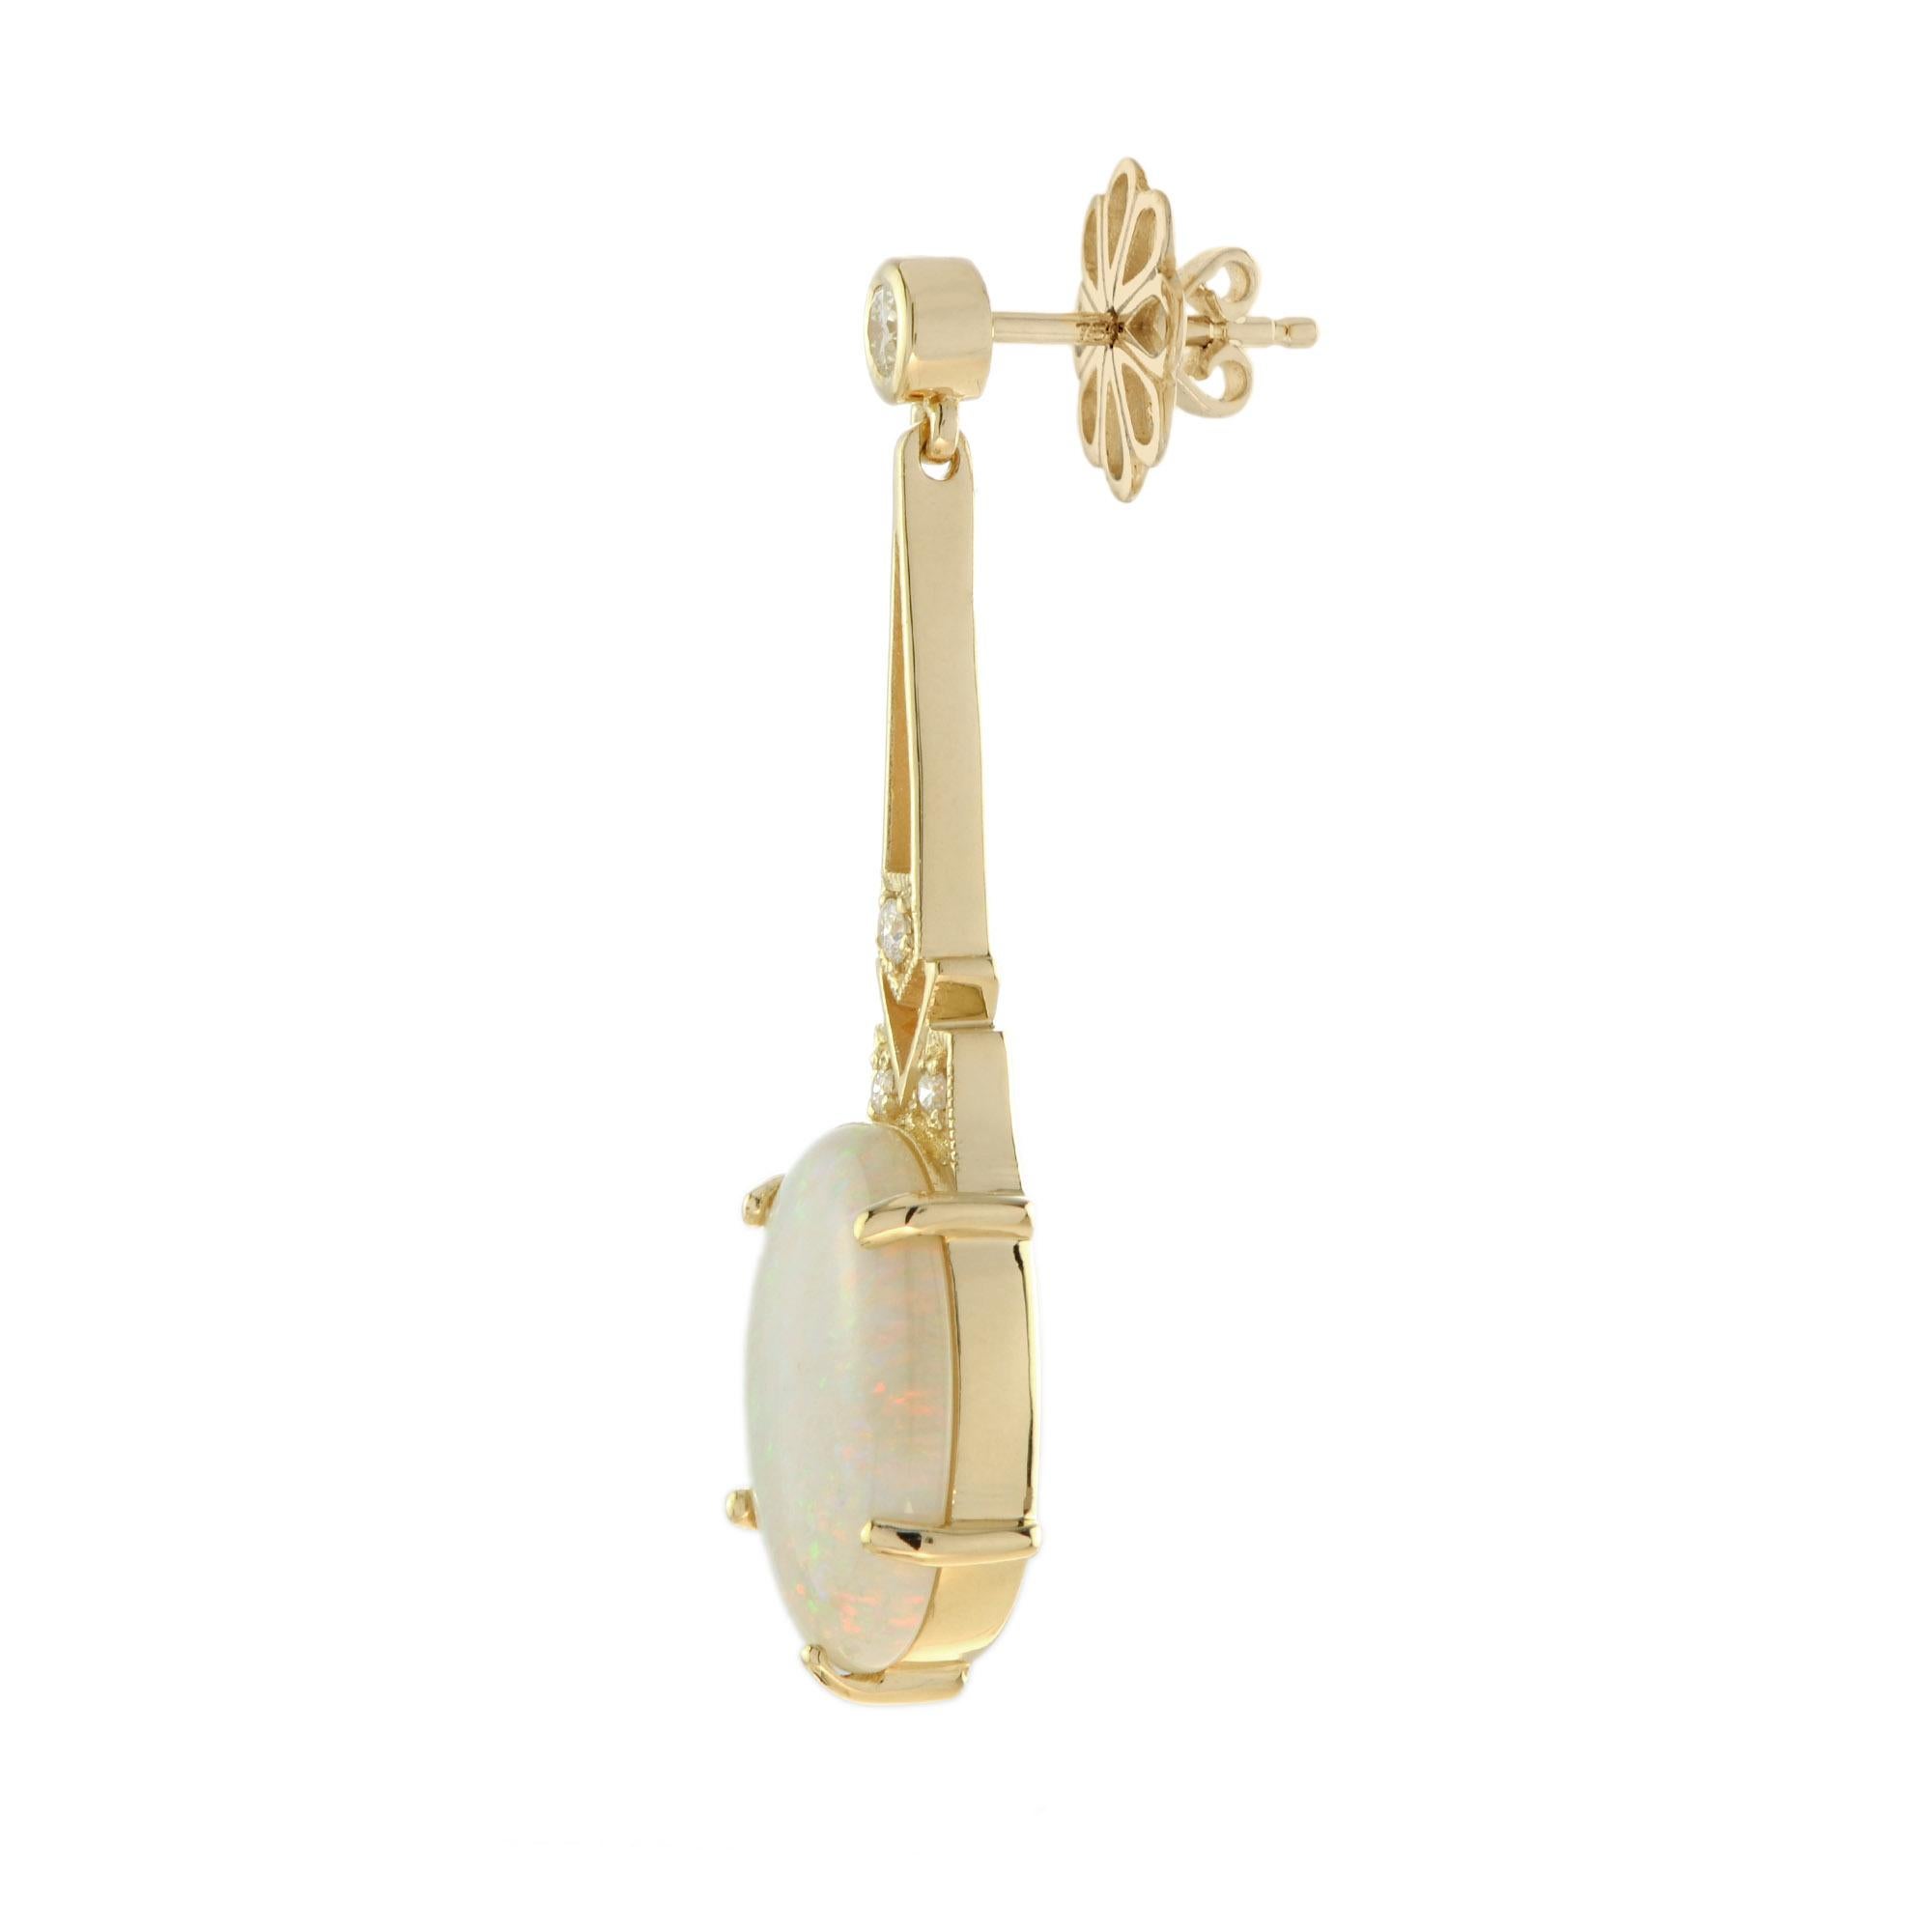 Dies ist ein exquisites Paar Opal-Ohrringe mit Art Deco-Ohrschmuck. Die Ohrringe haben ein geometrisches Design, das in der Mitte mit Opalen in Zacken besetzt ist. Jeder Ohrring ist mit schönen funkelnden Diamanten in geometrischer Form auf dem